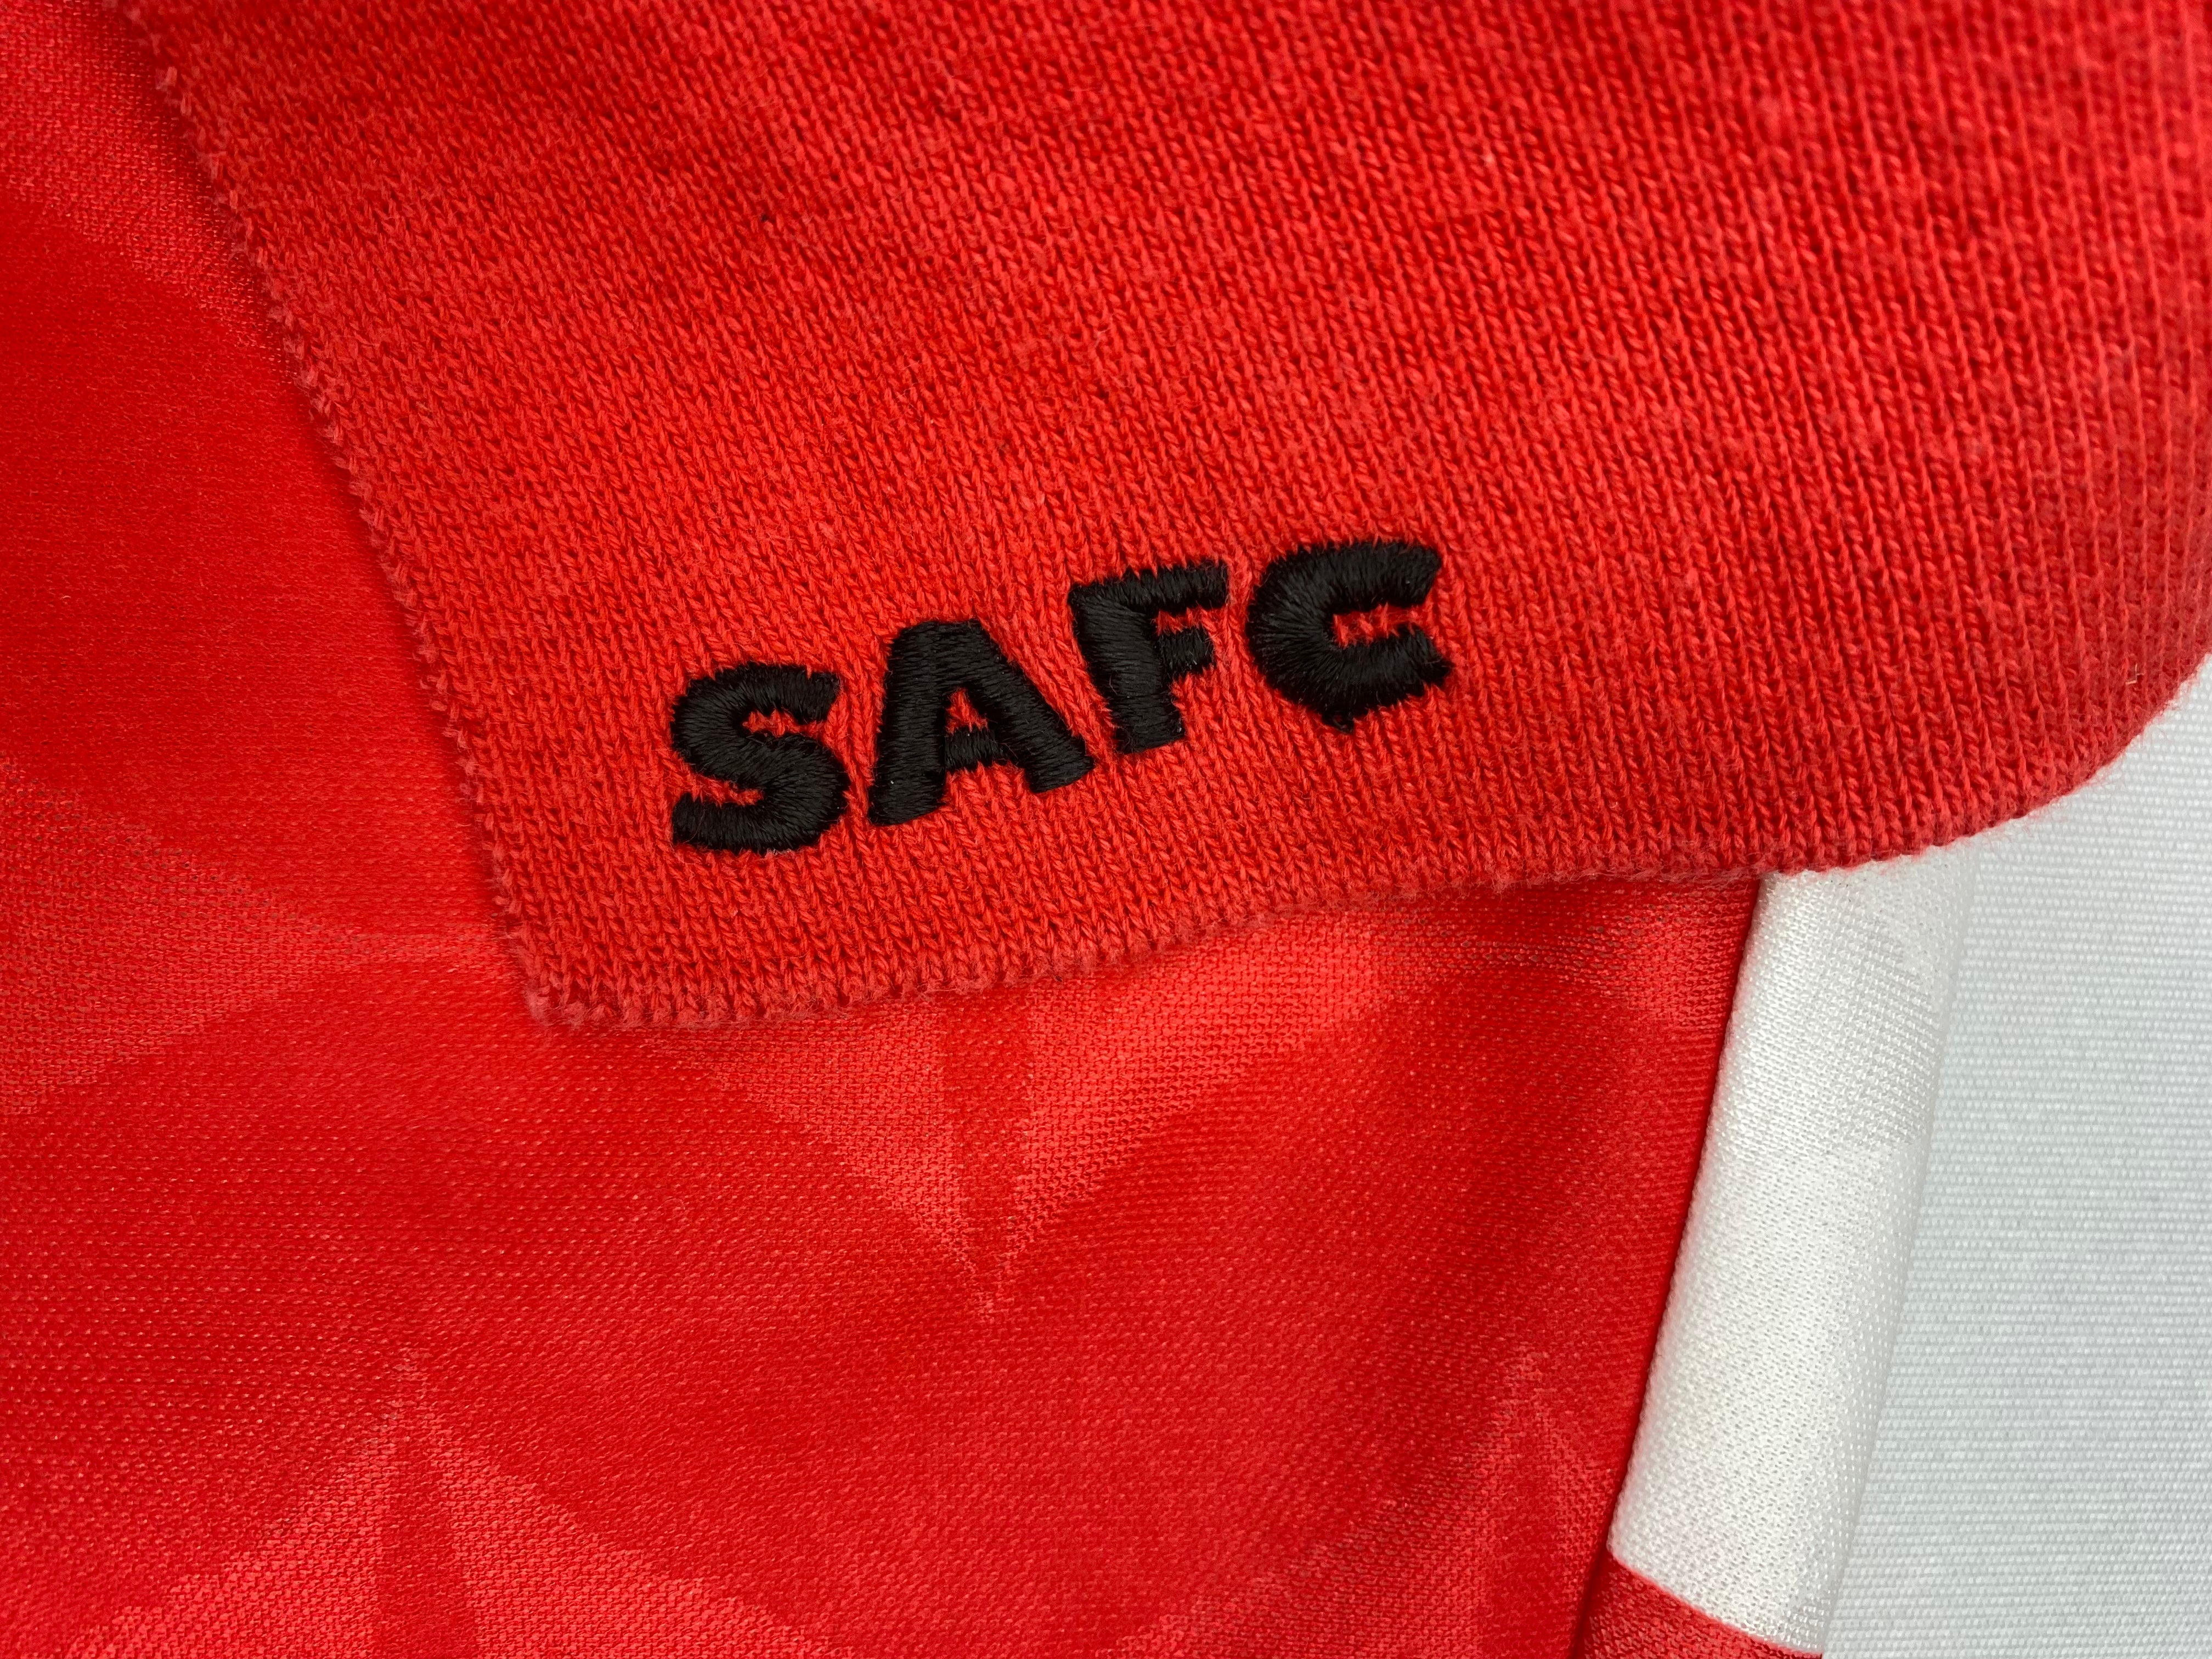 1994/96 Camiseta local del Sunderland (XL) 9/10